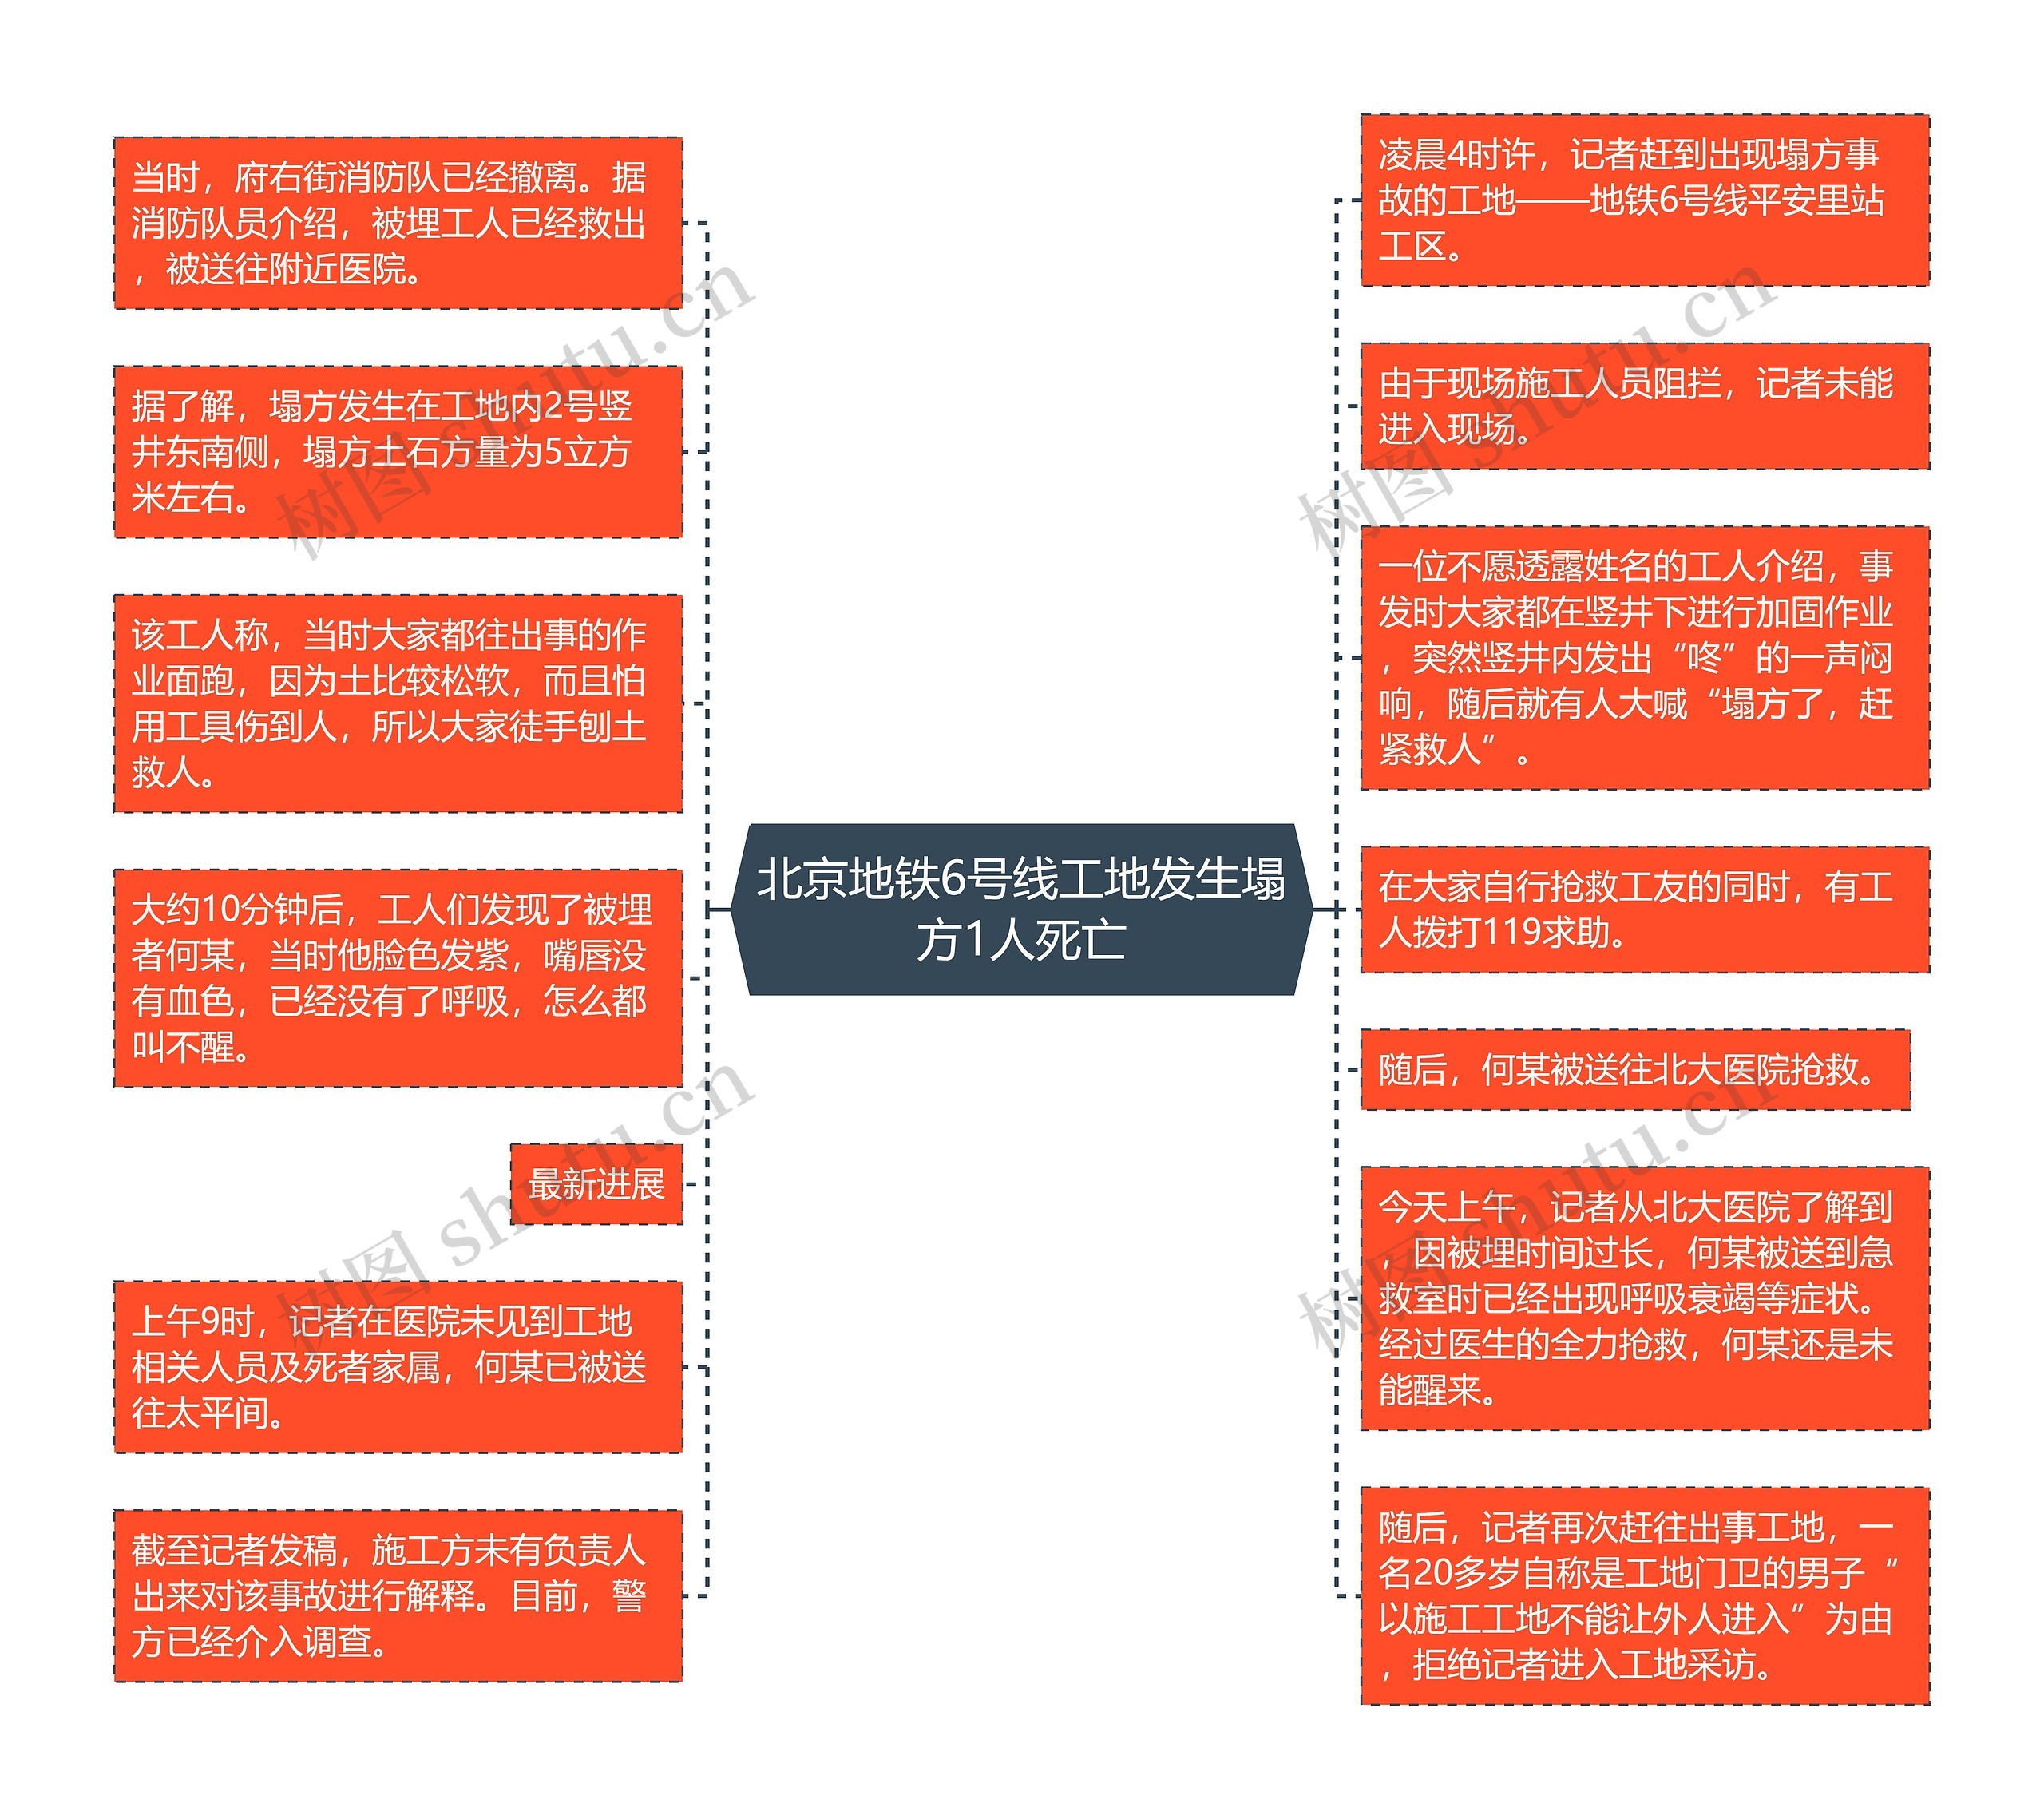 北京地铁6号线工地发生塌方1人死亡思维导图